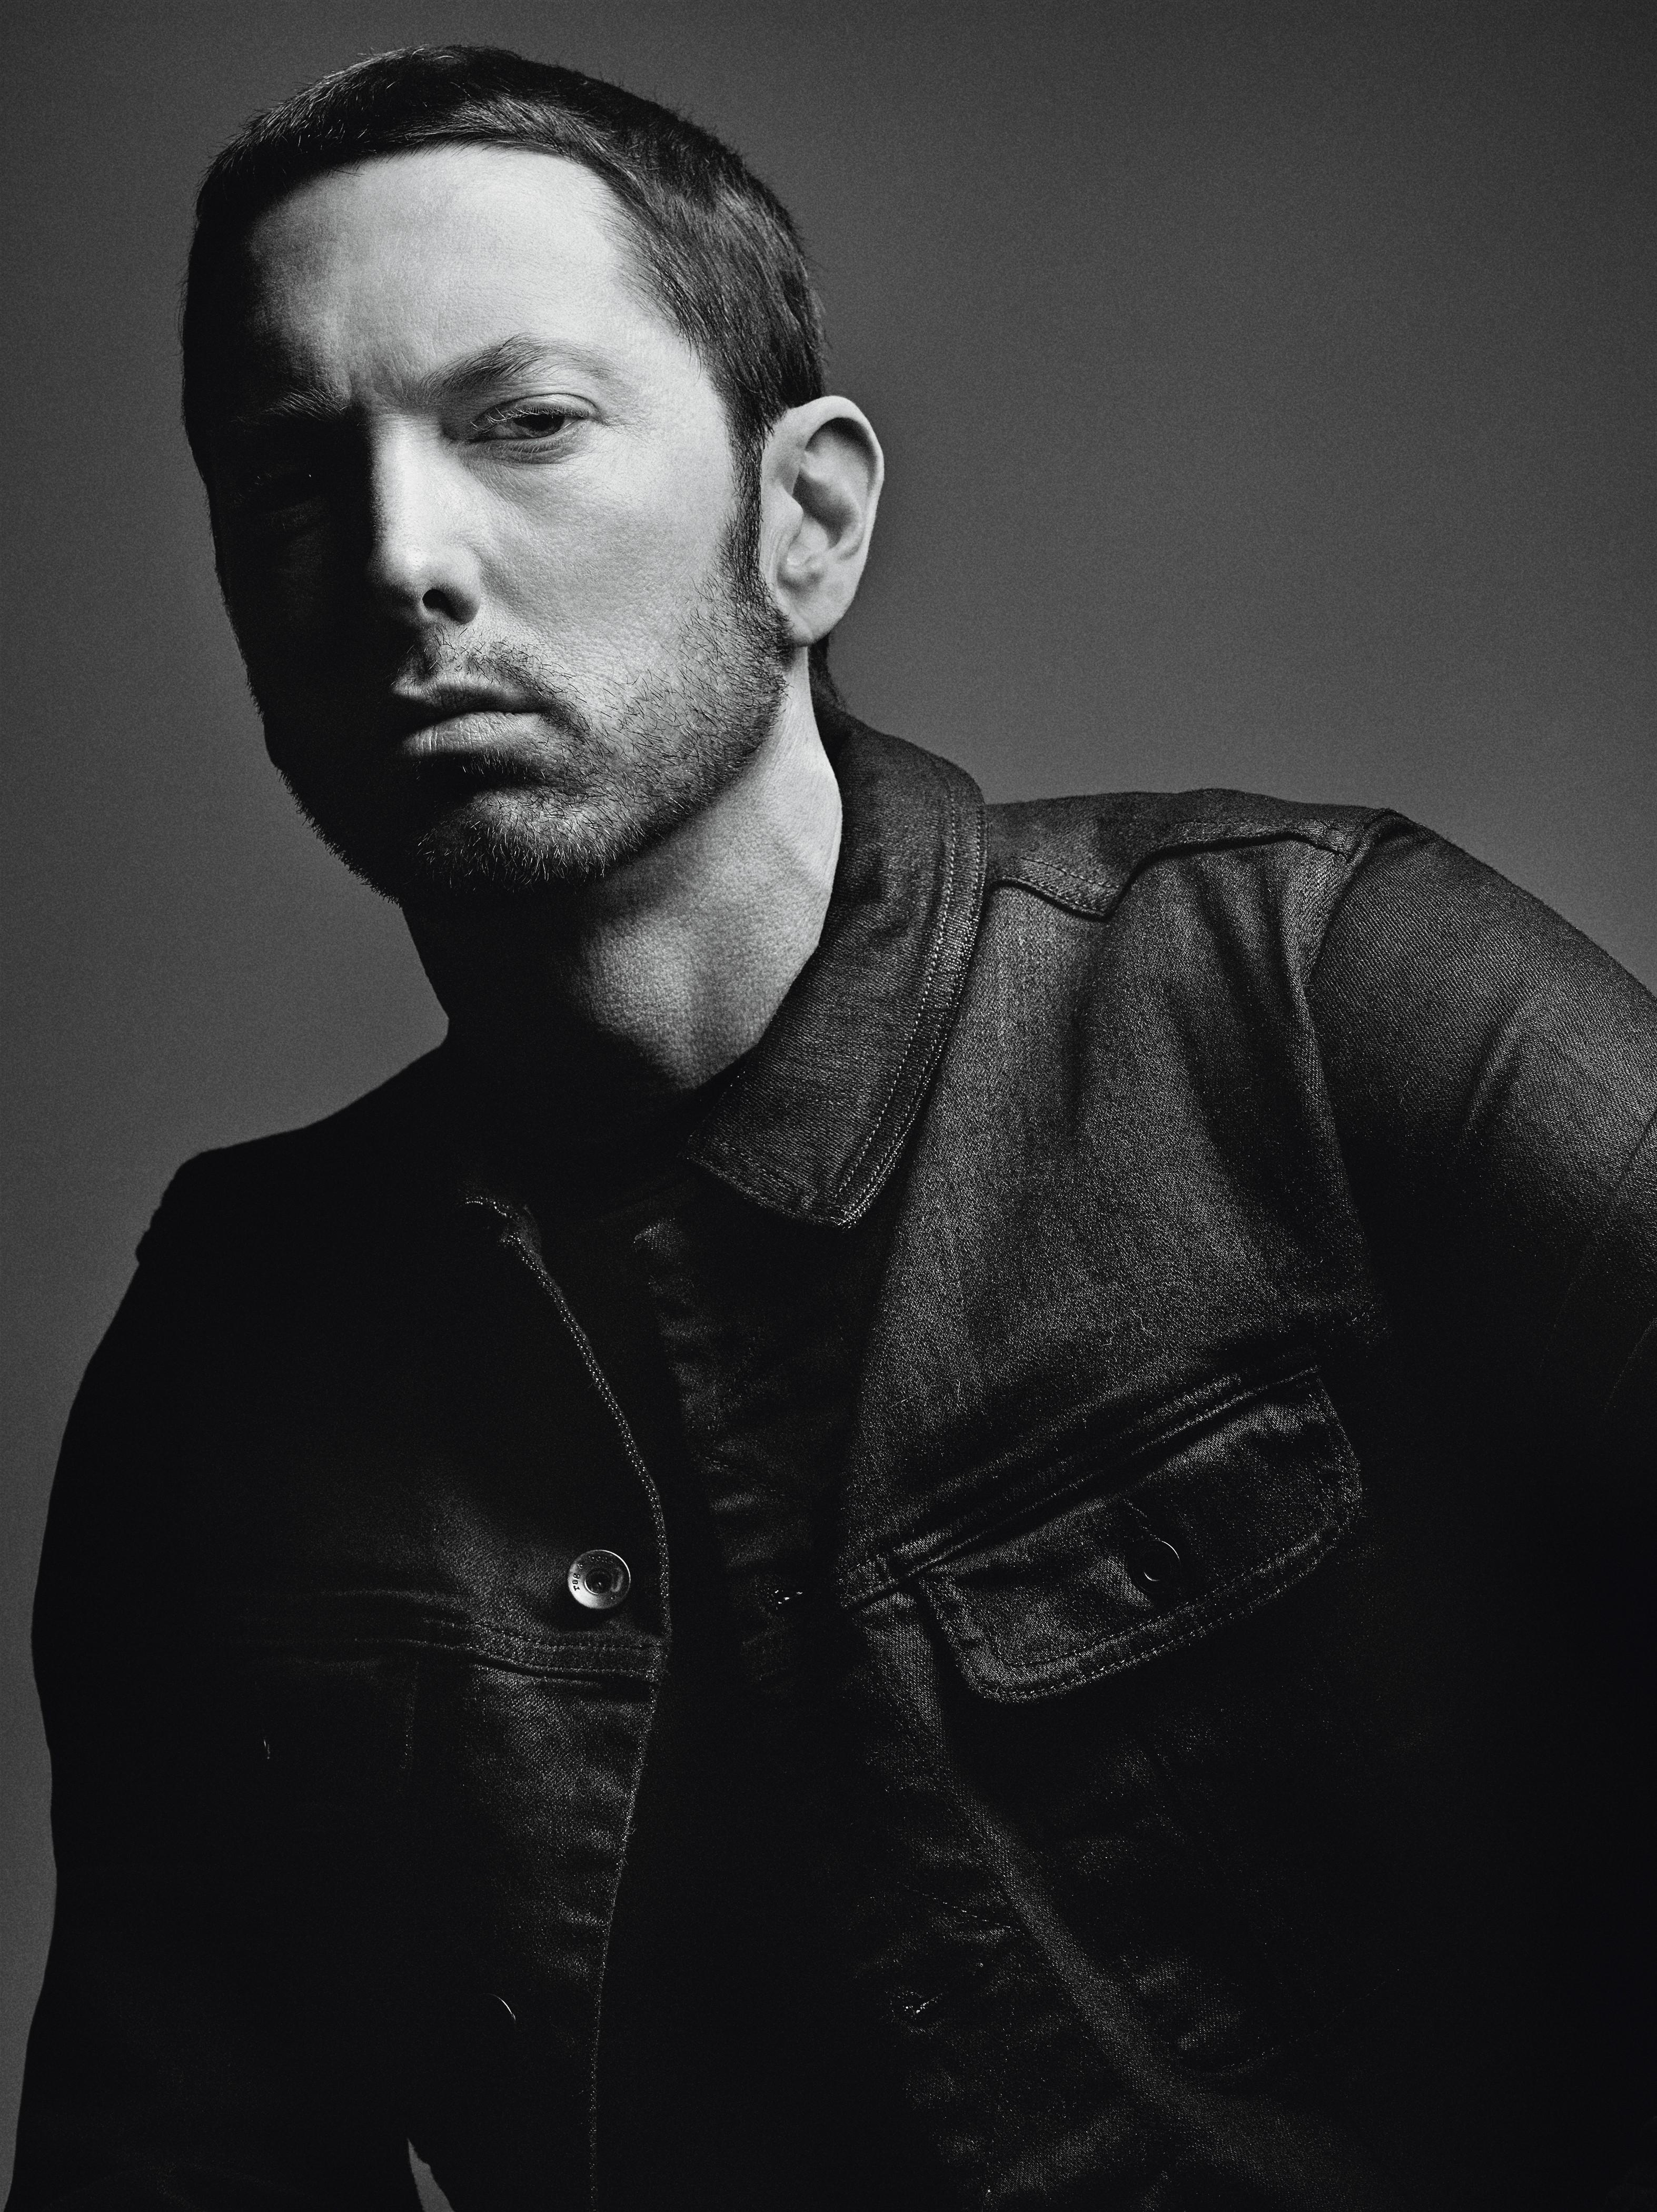 Eminem Artist Wallpaper Awesome Obat Kutu Rambut Ulasan Produk